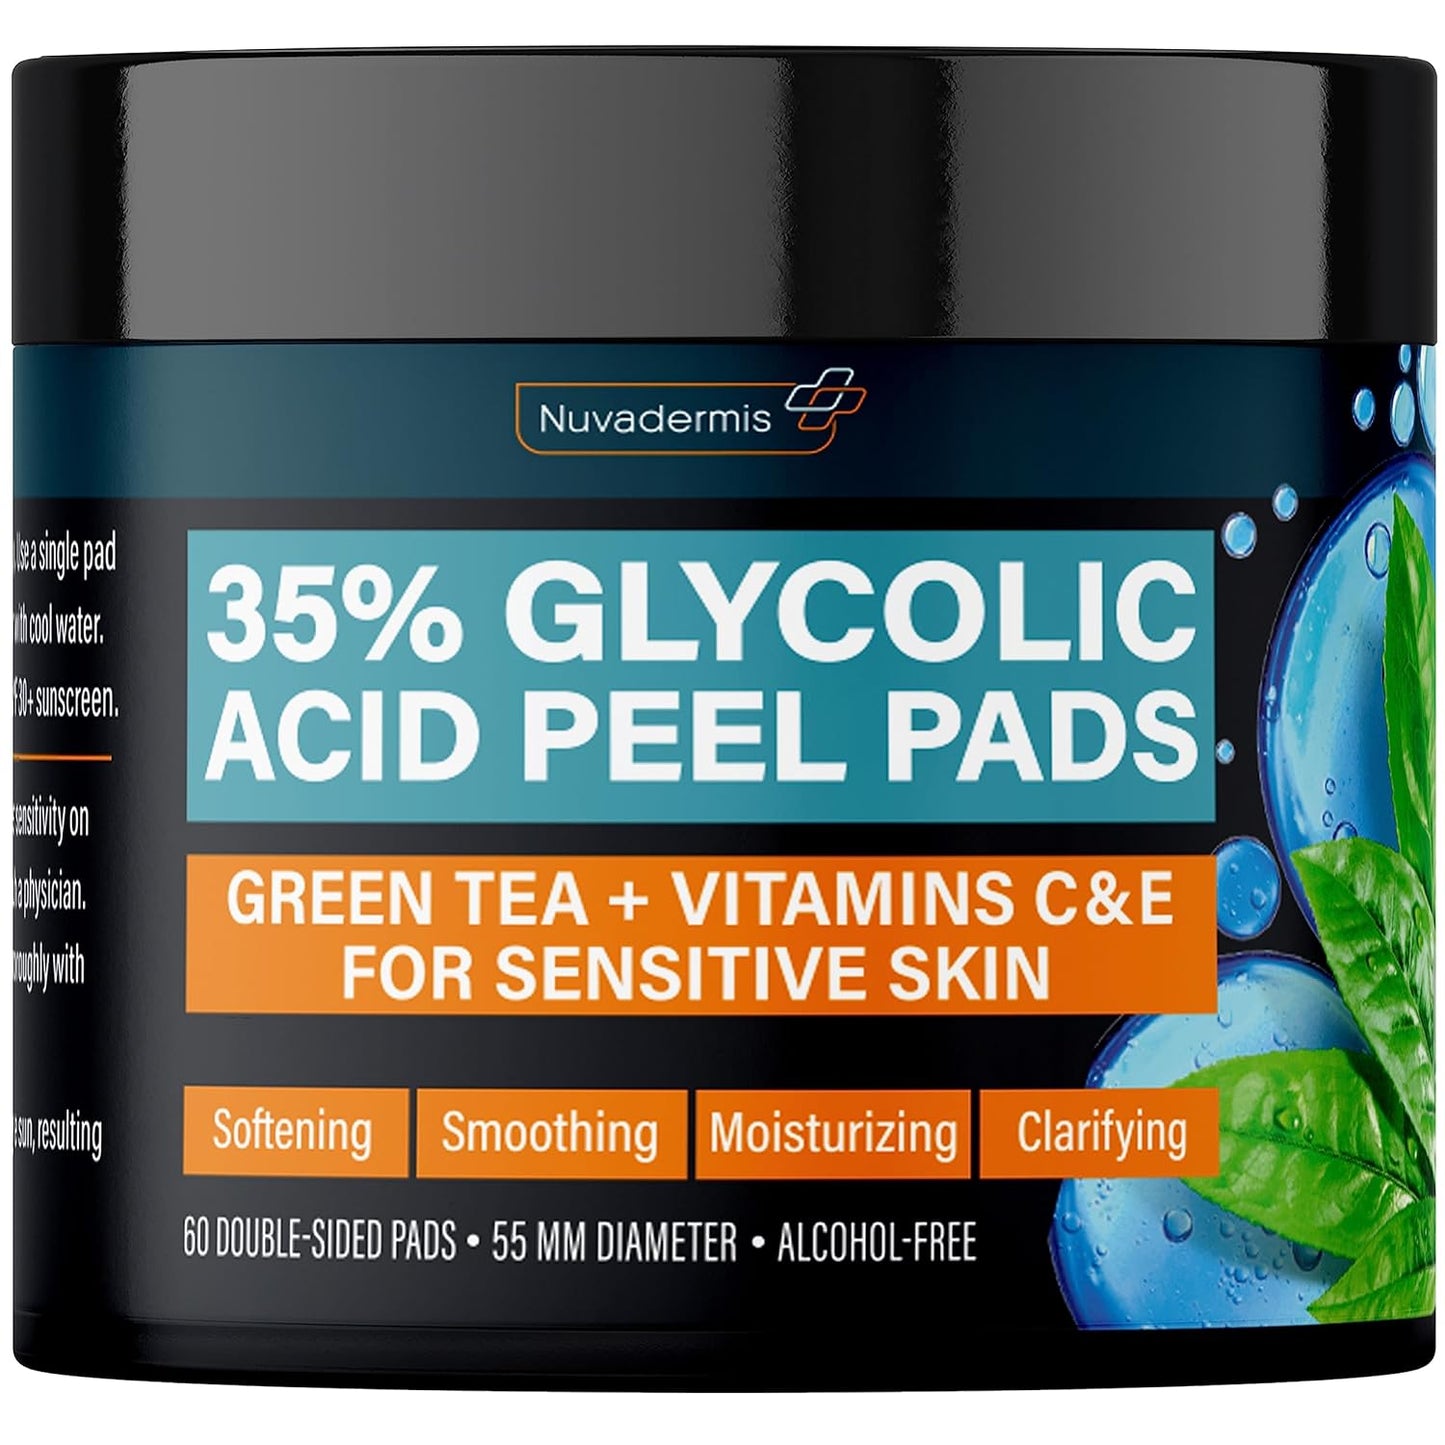 Glycolic Acid Peel Pads